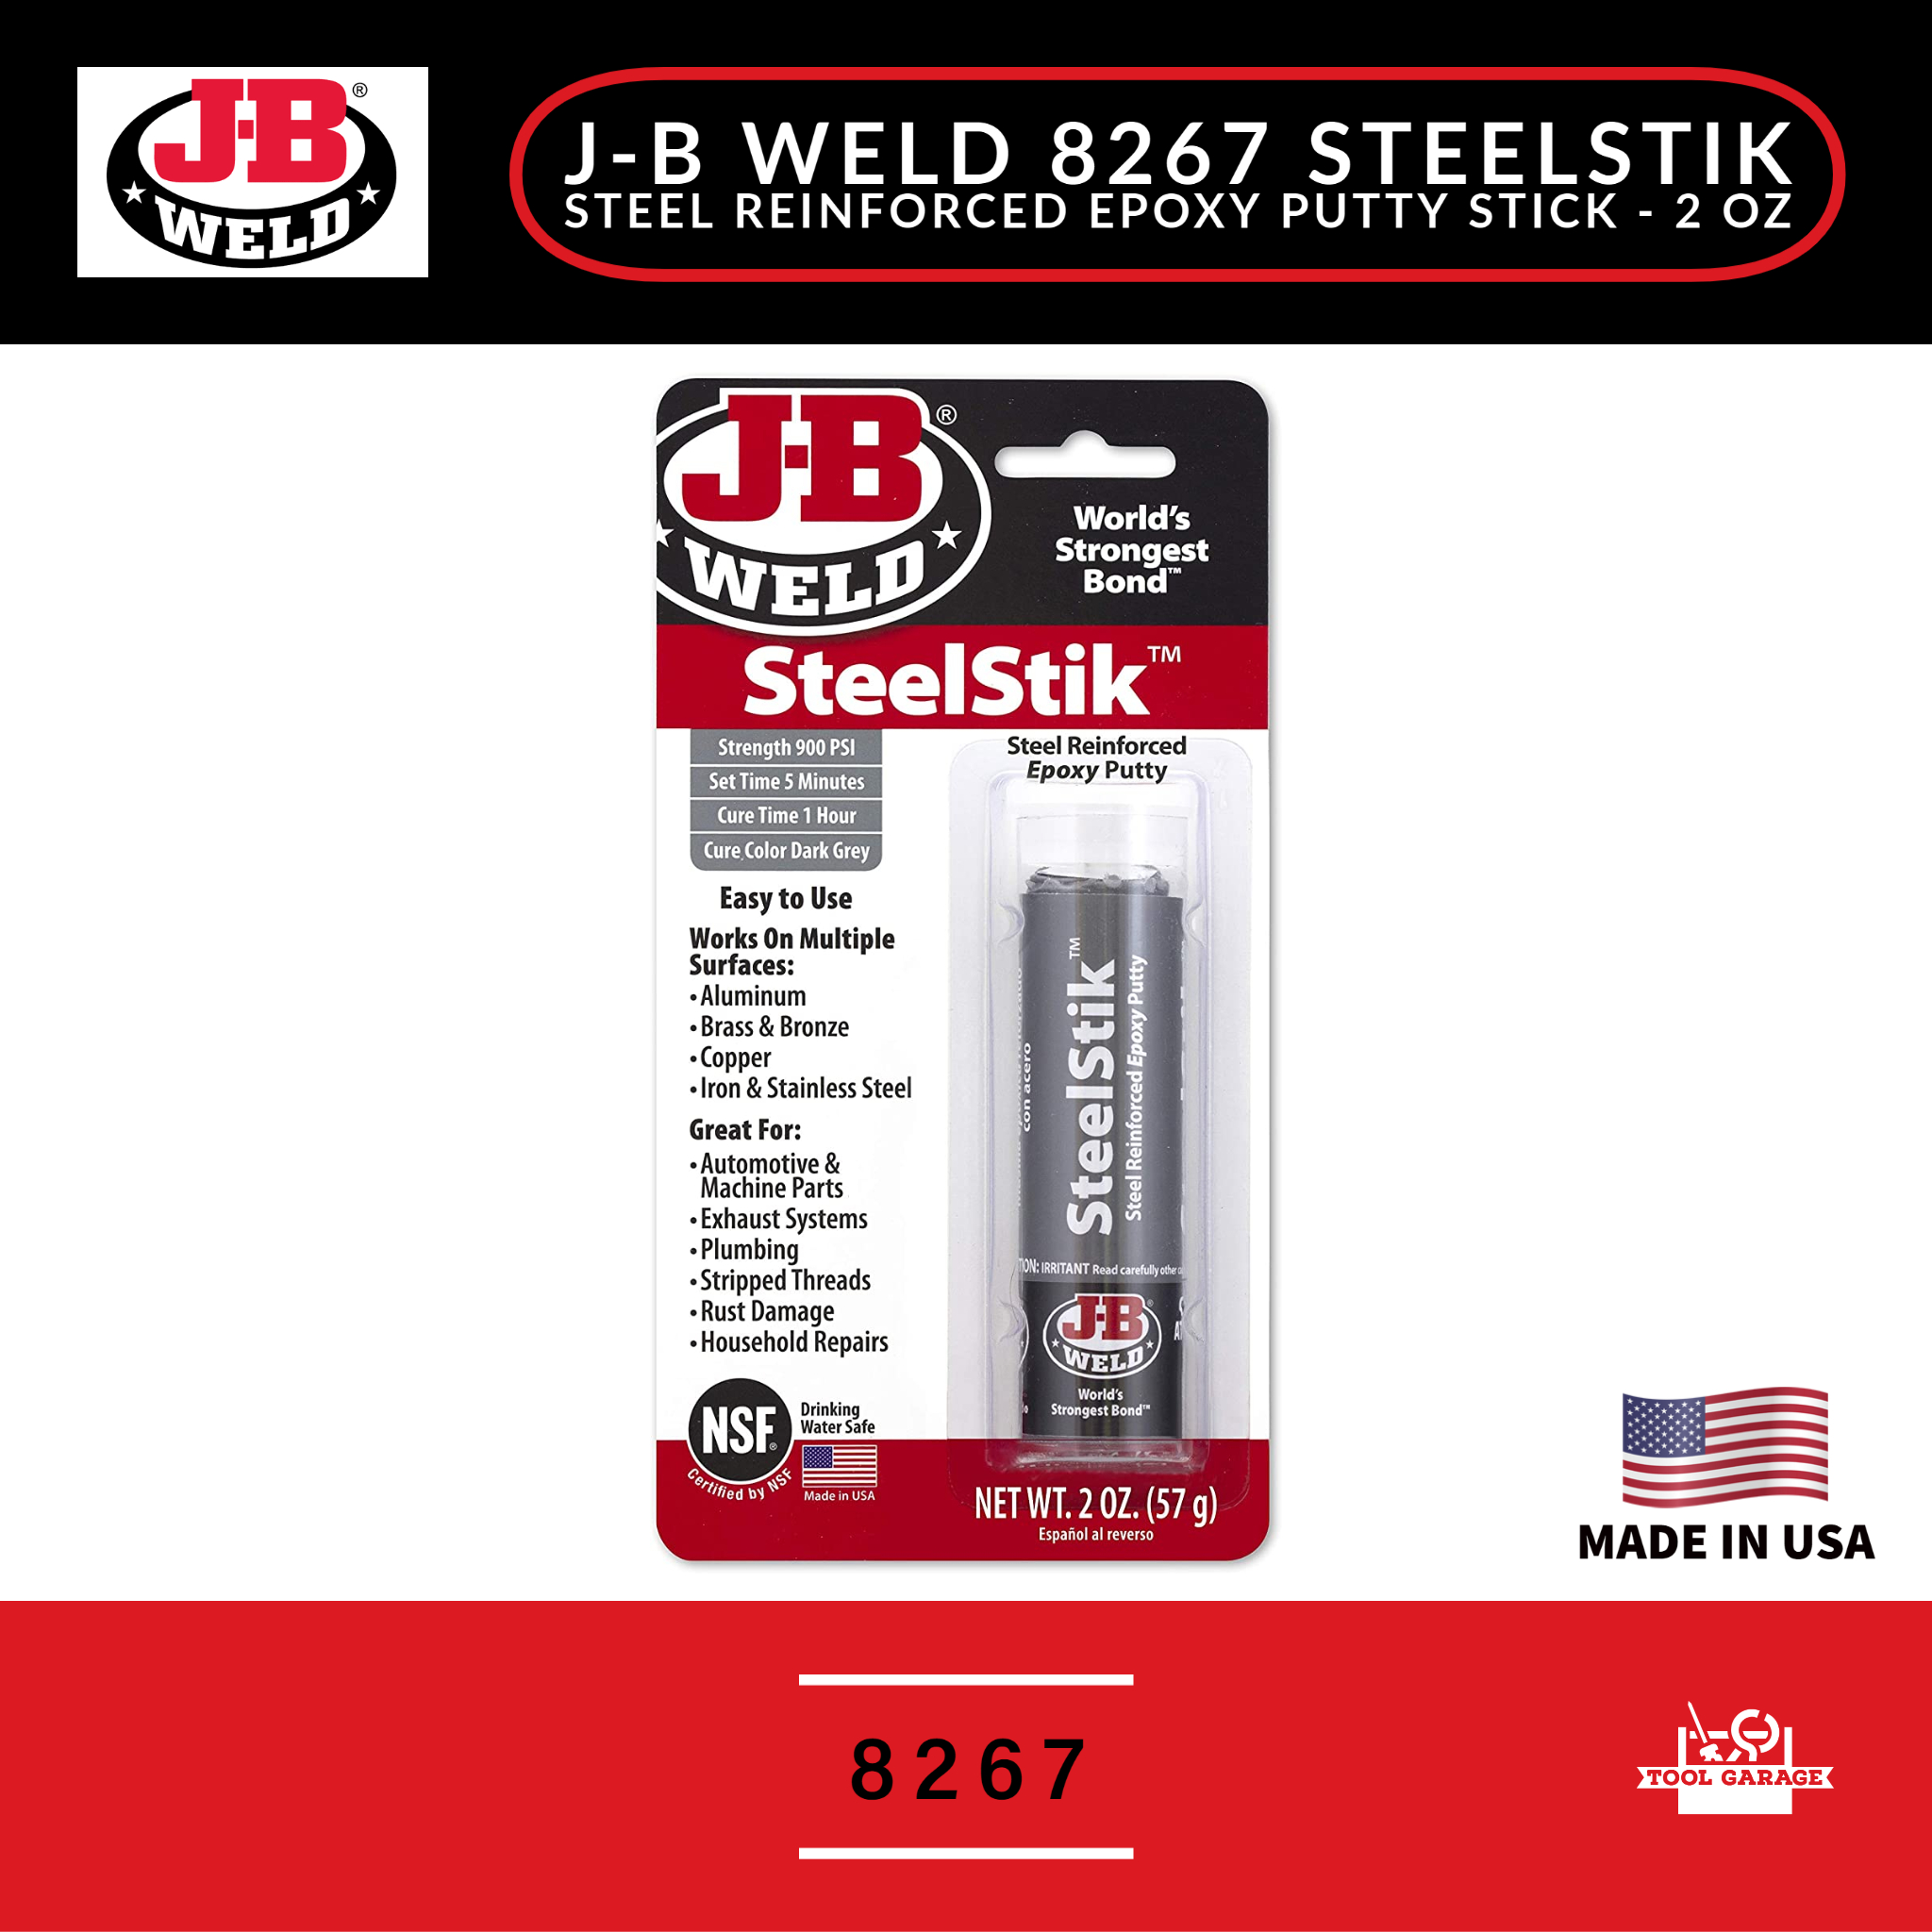 J-B Weld SteelStik Reinforced Epoxy Putty - 2 oz stick